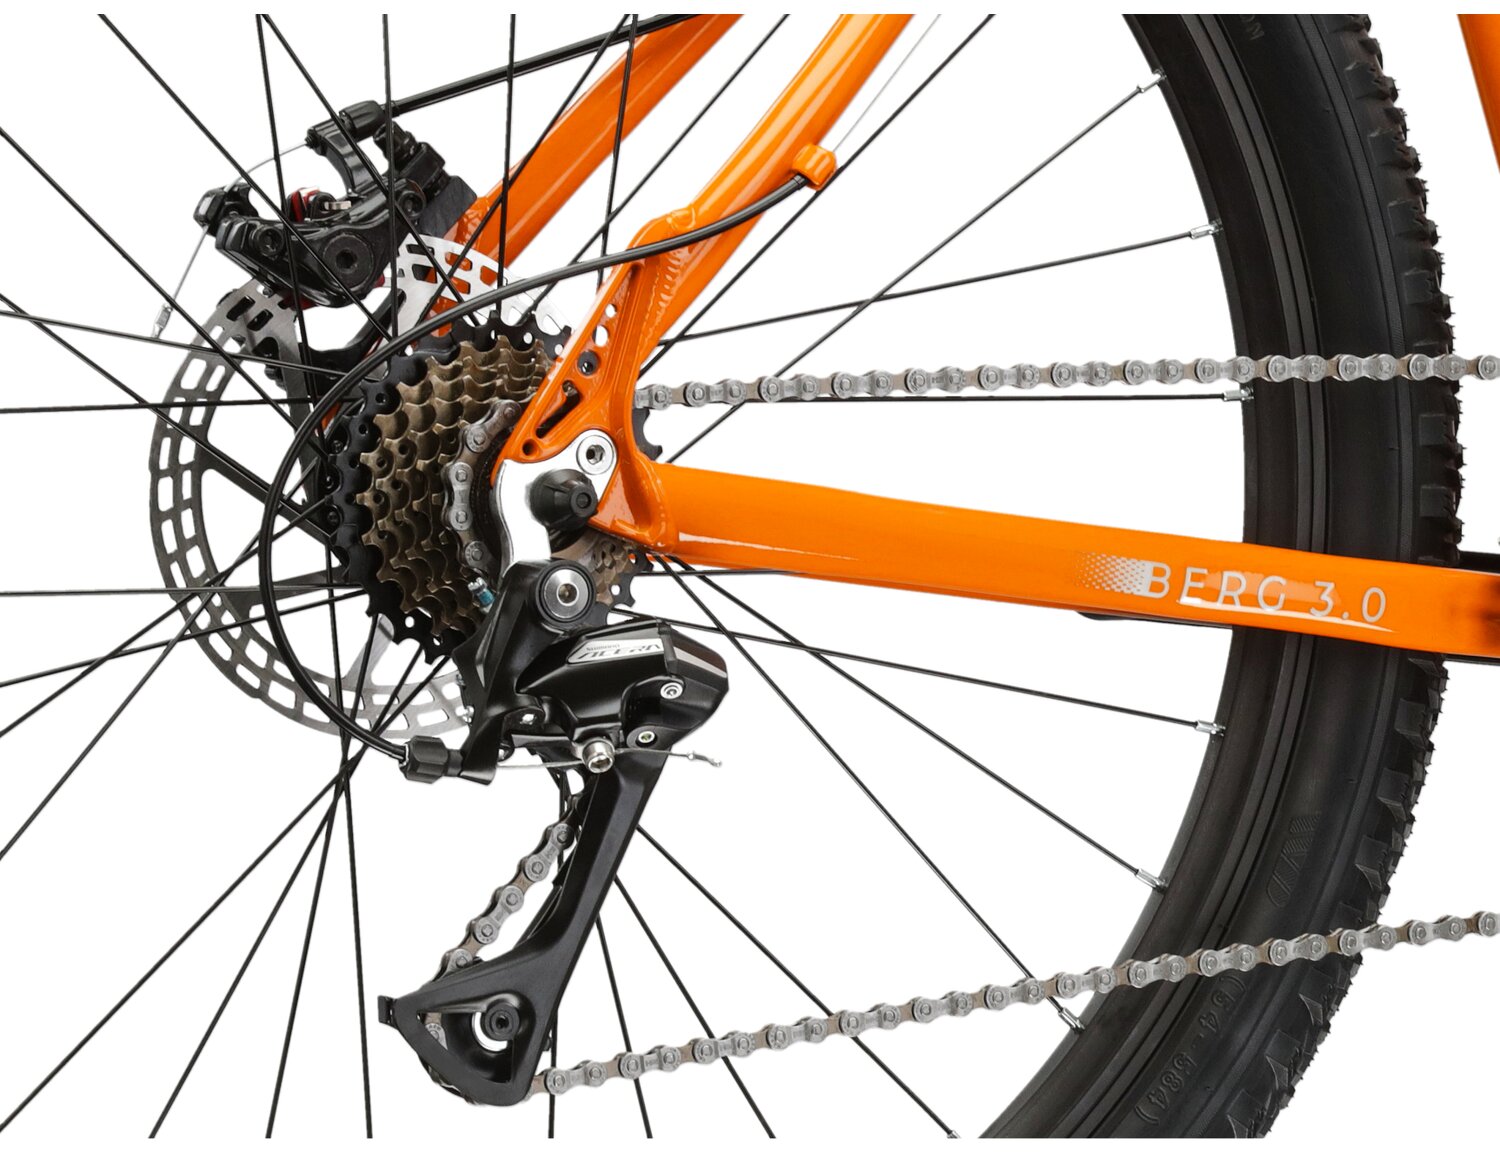  Tylna siedmiobiegowa przerzutka Shimano Acera RD M3020 oraz mechaniczne hamulce tarczowe w rowerze górskim MTB KROSS Bergo 3.0 